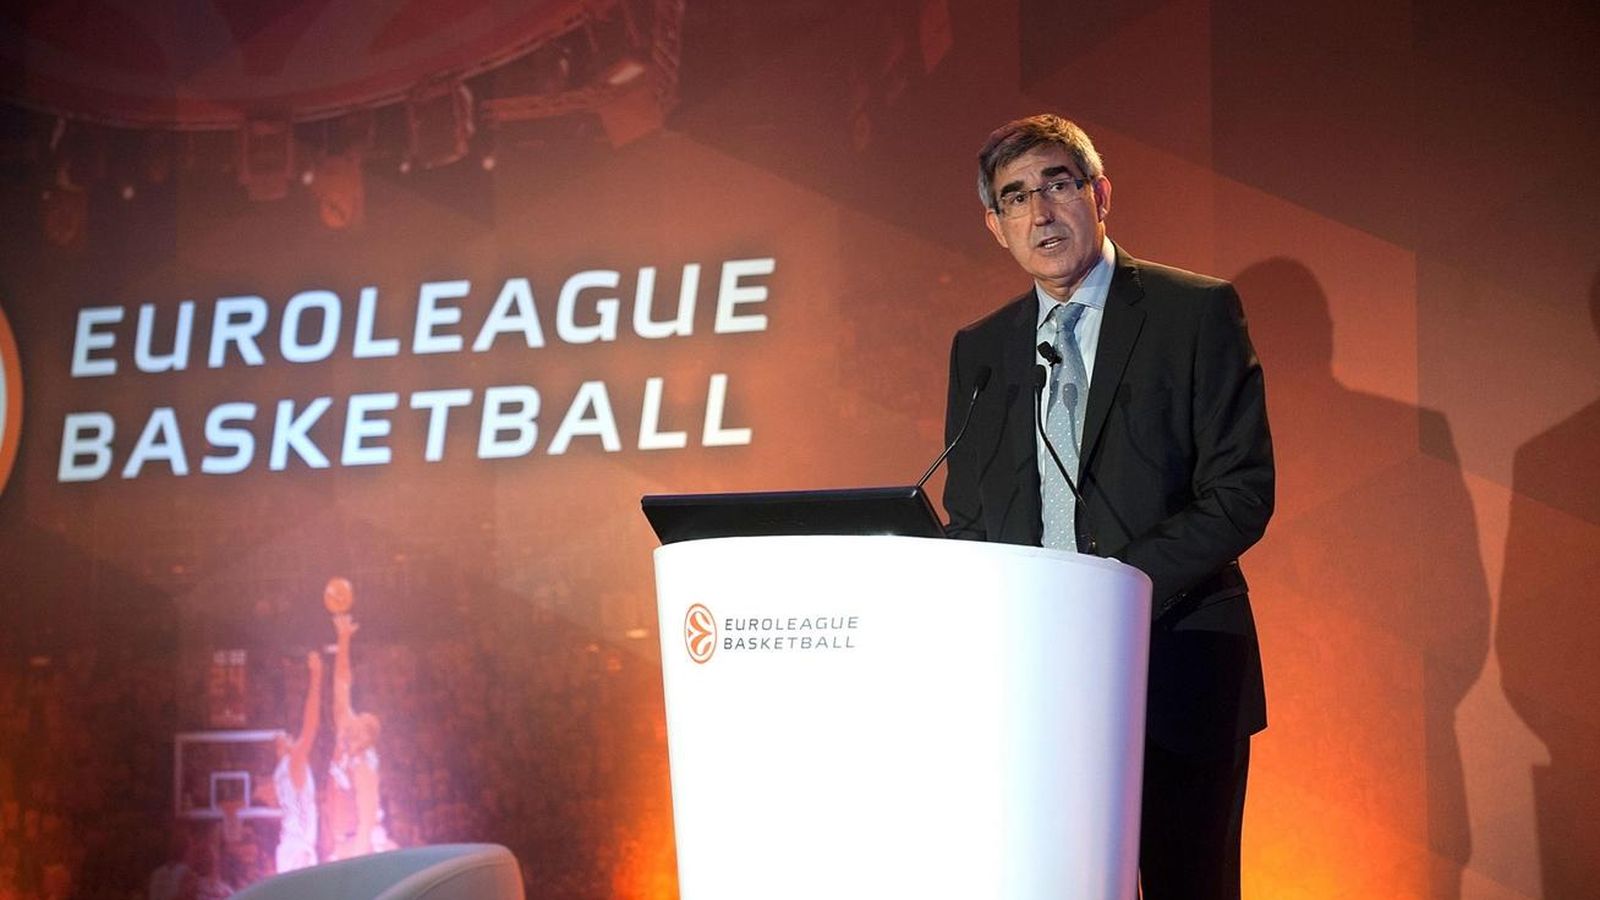 Foto: Bertomeu opina que la propuesta de FIBA está anclada en el pasado (Getty Images)